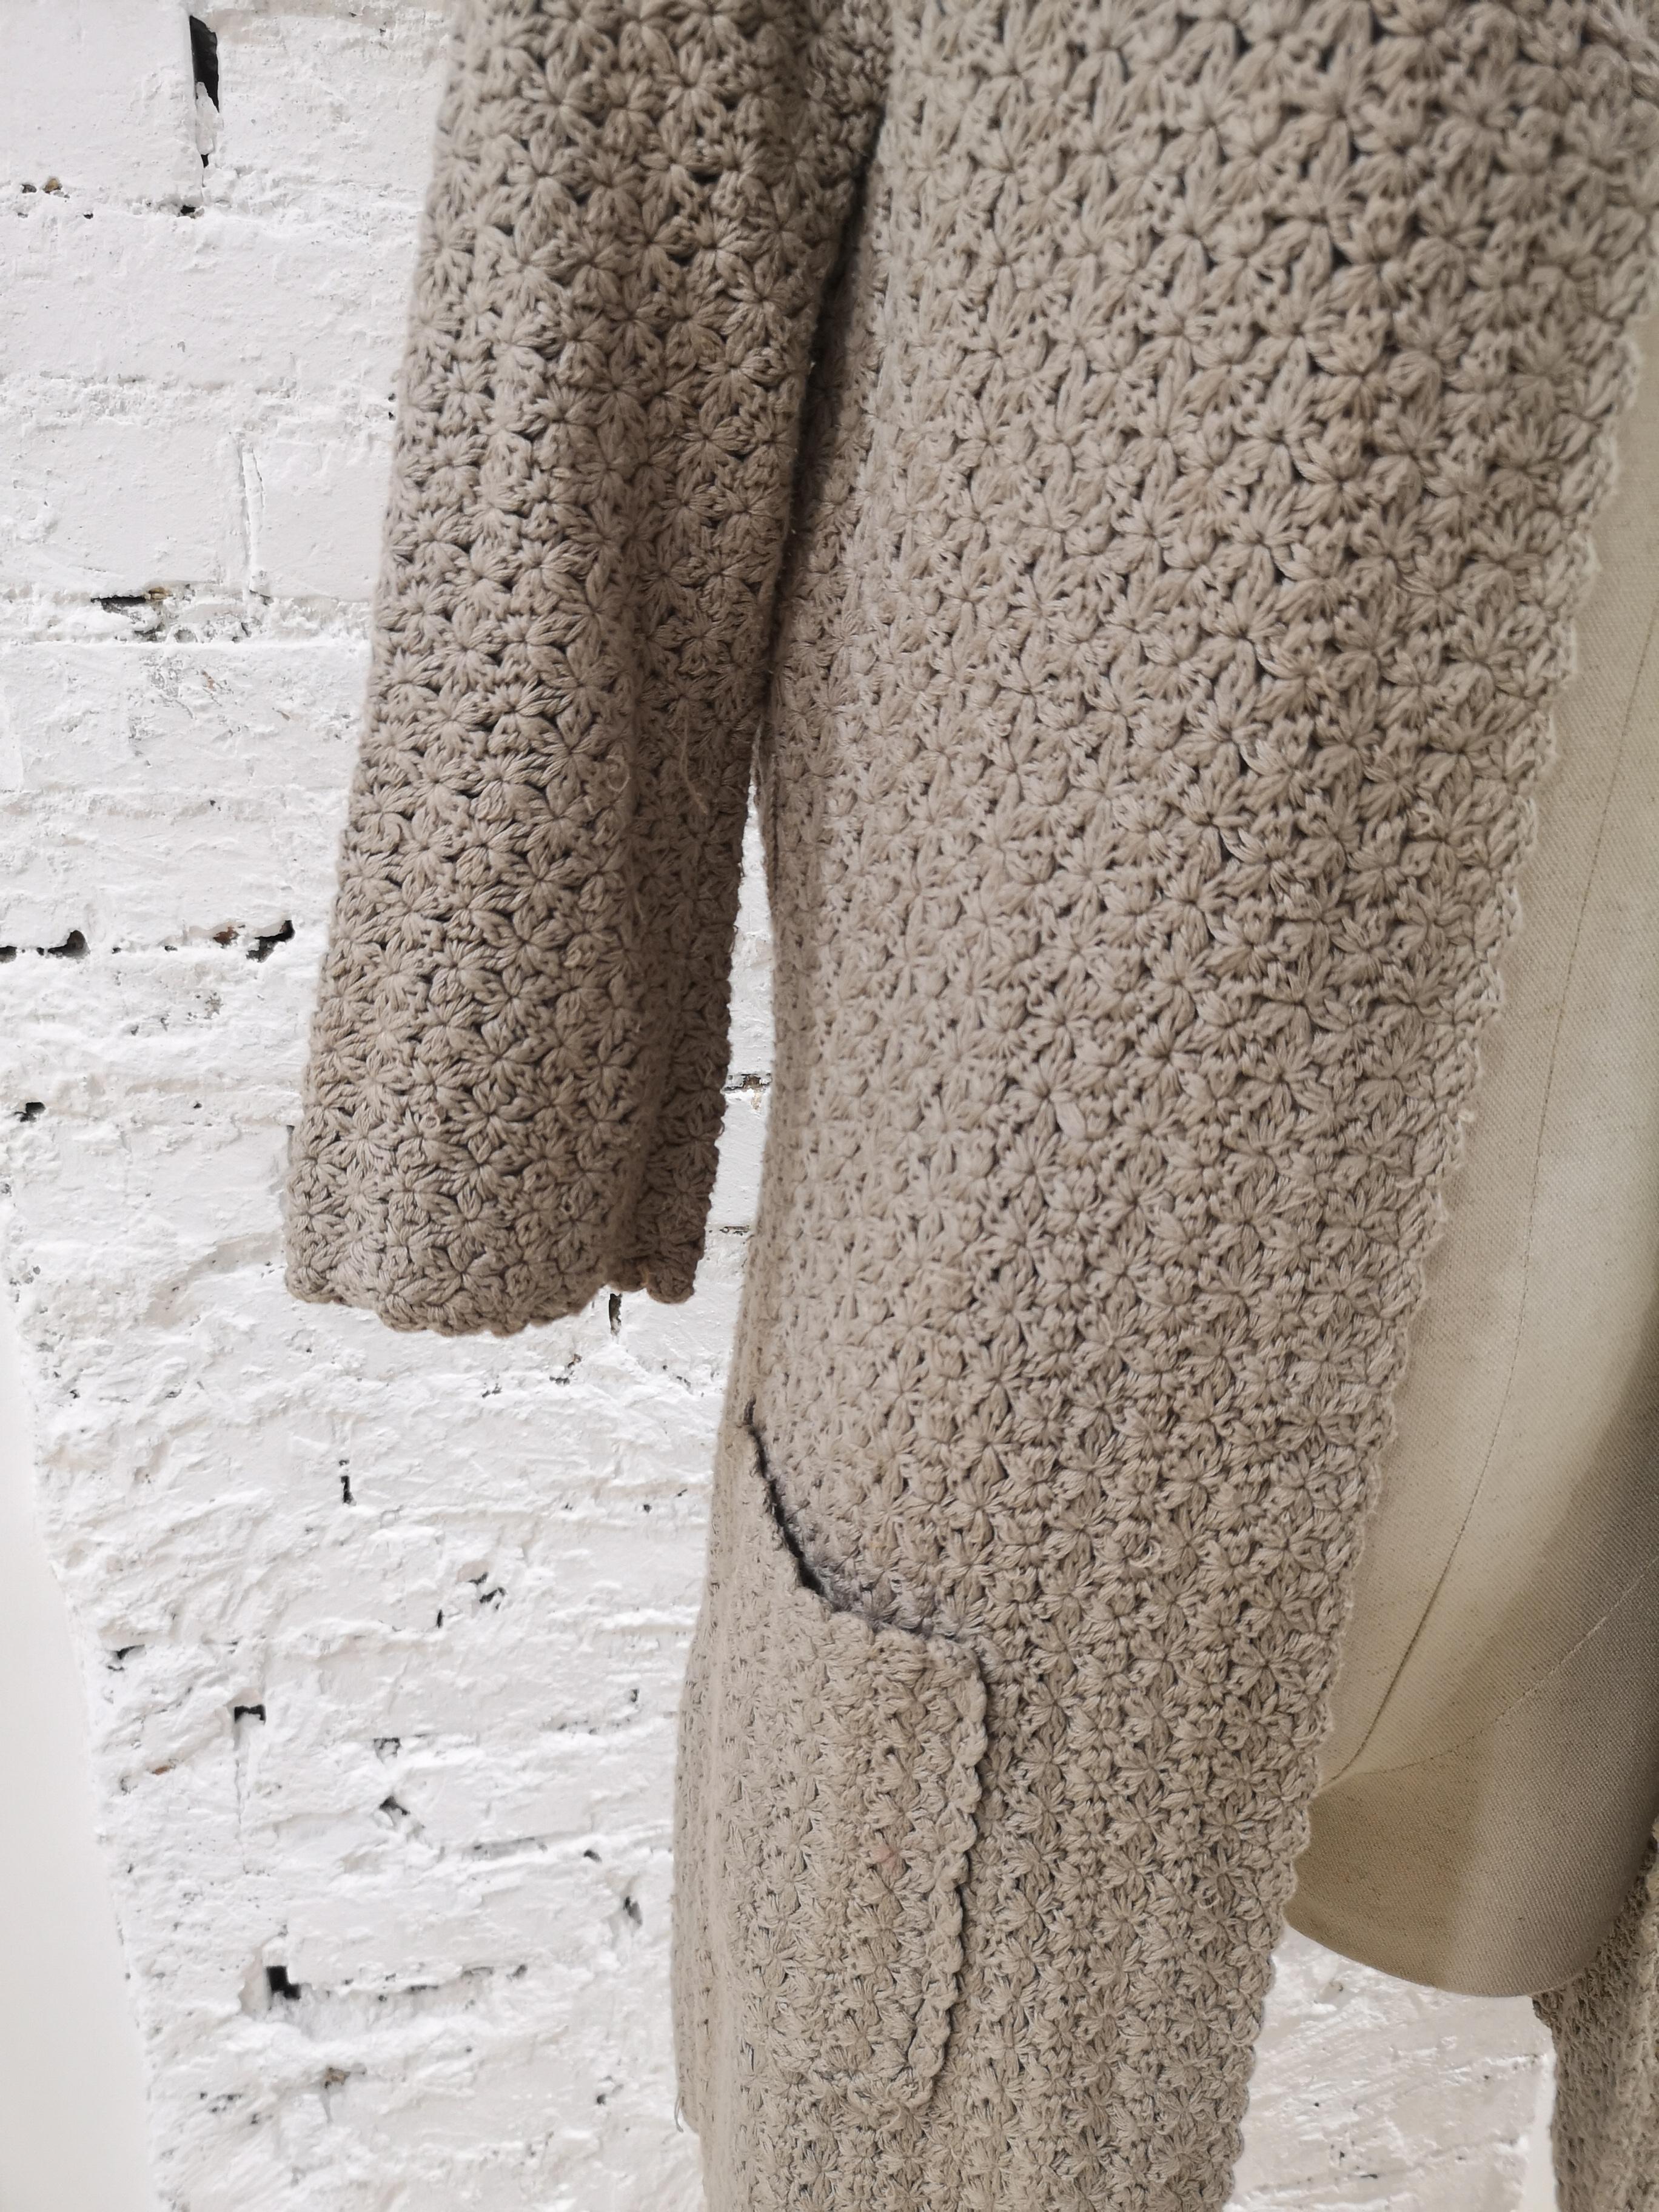 P.A.R.O.S.H beige knit cotton long coat / sweater 
size M 